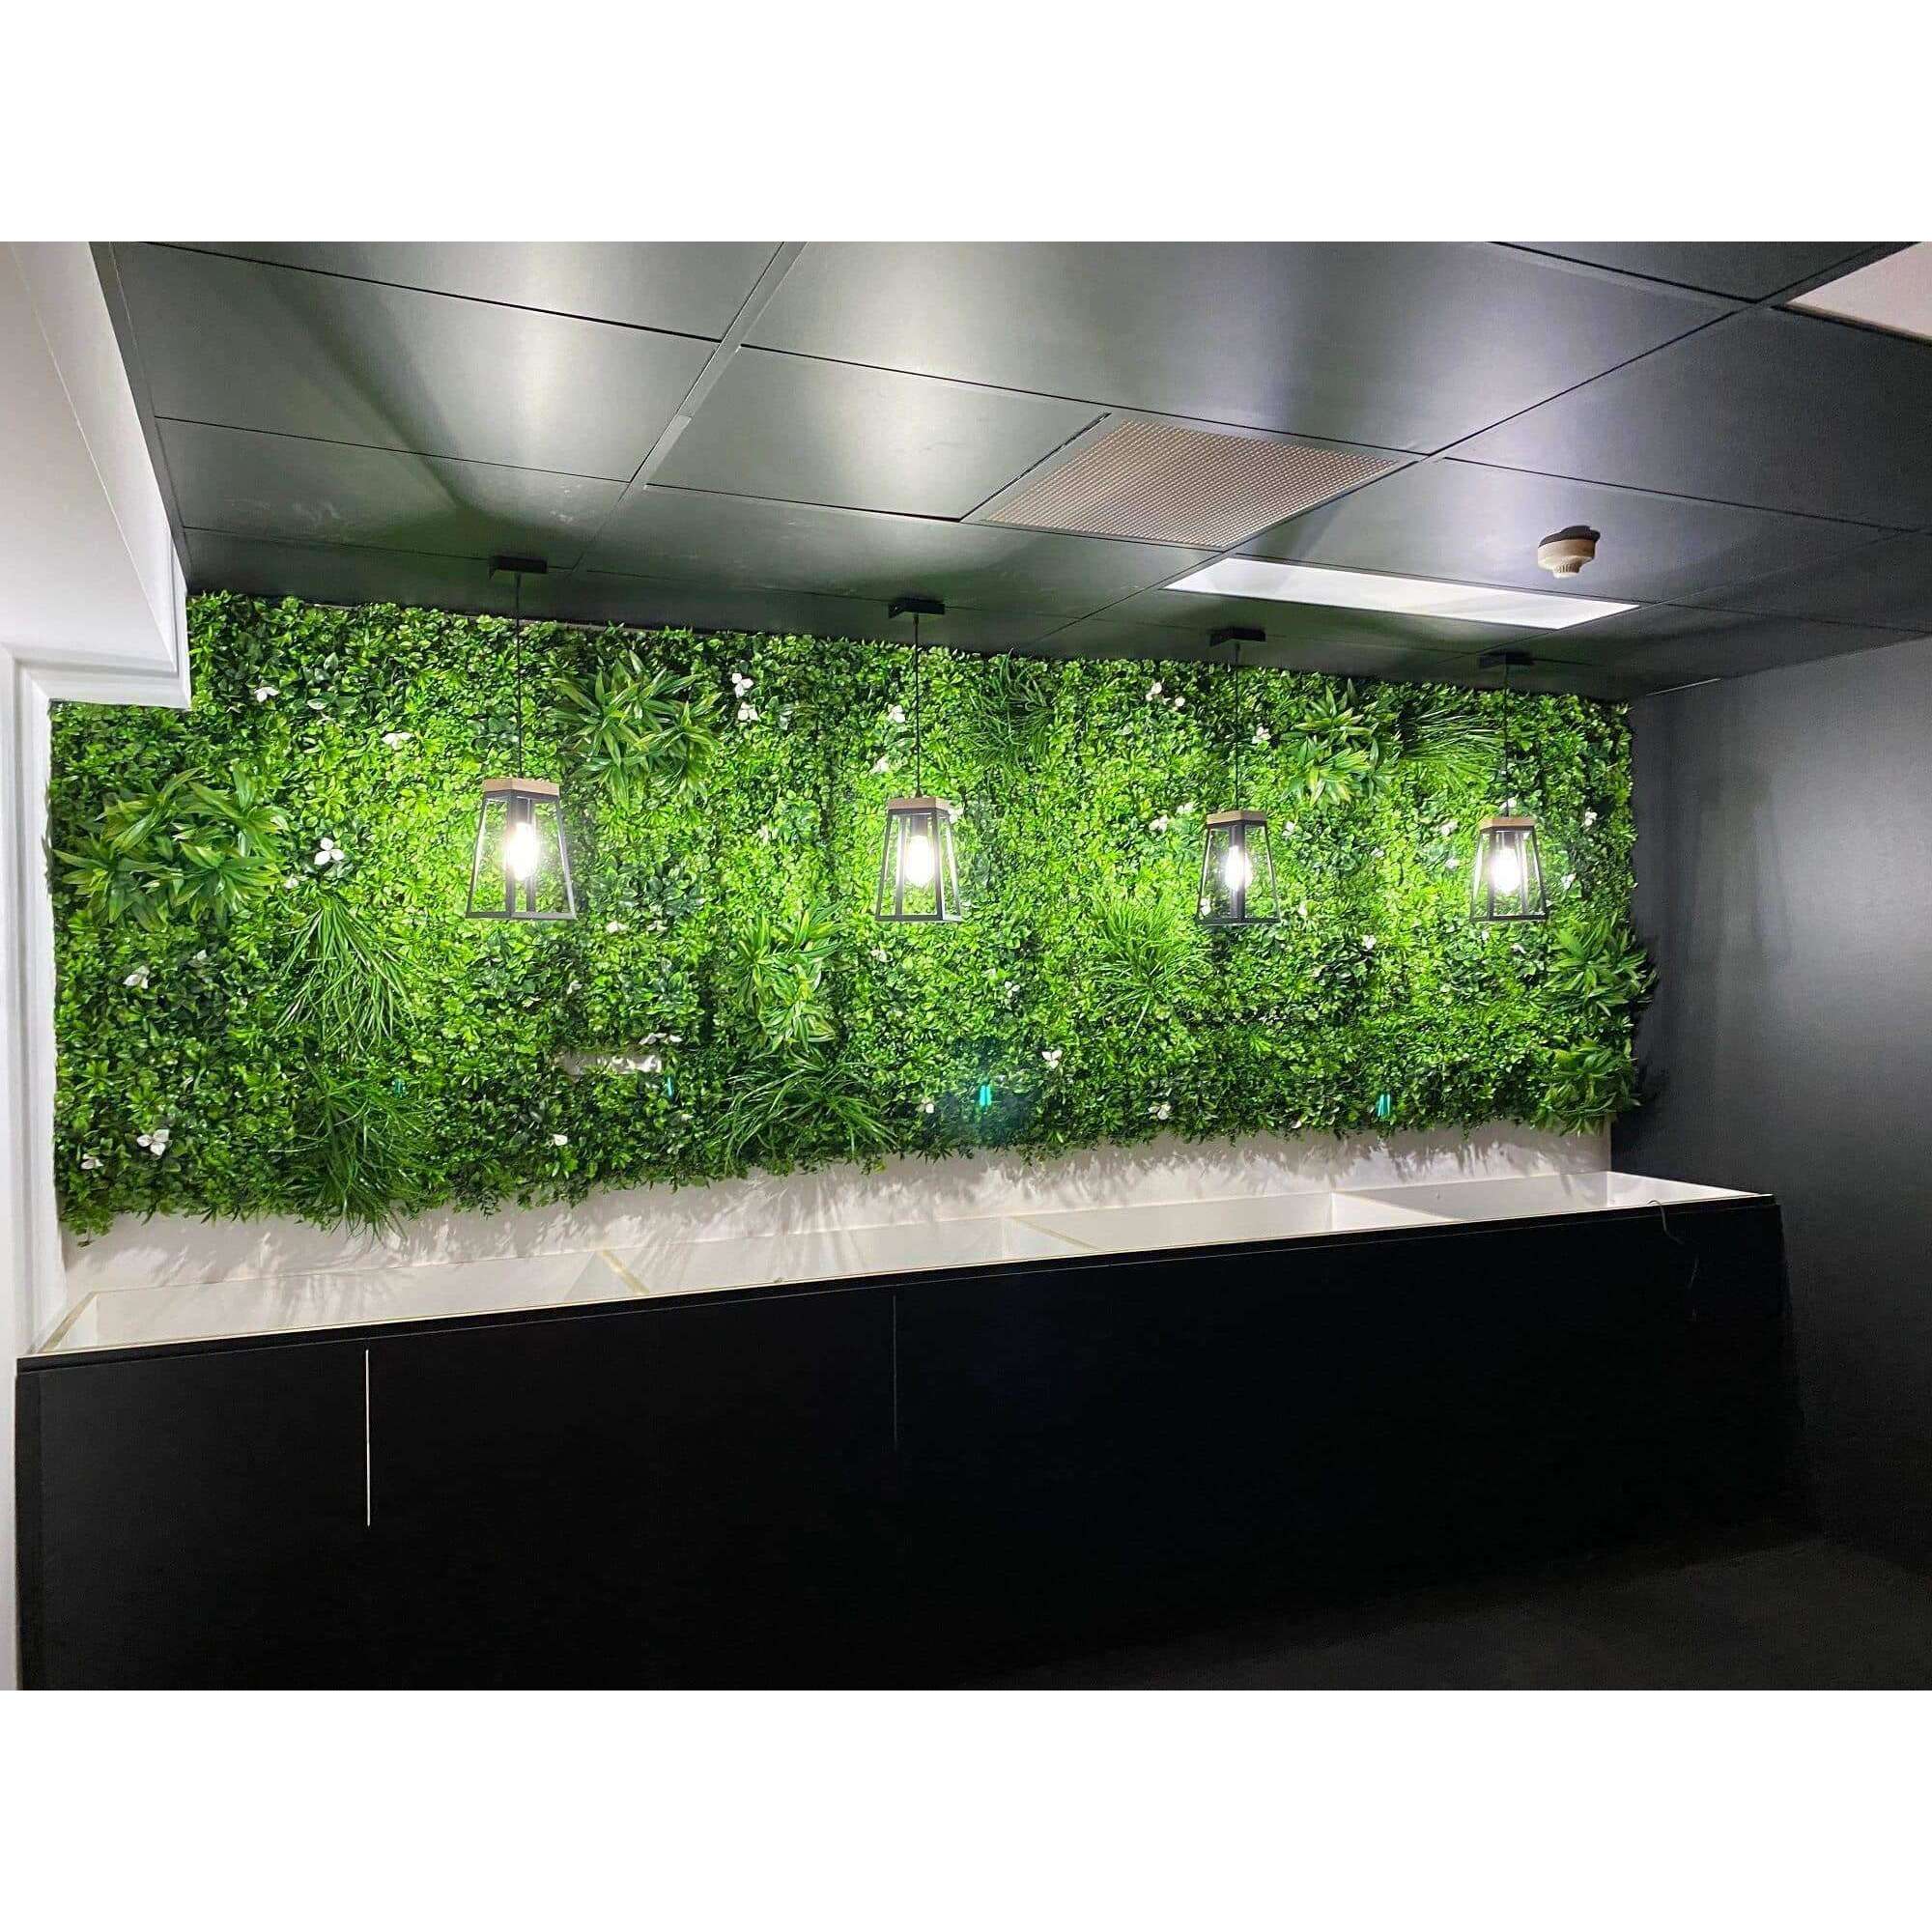 Sample - White Lily Artificial Vertical Garden Panel (25cm x 25cm) - Designer Vertical Gardens artificial garden wall plants artificial green wall australia